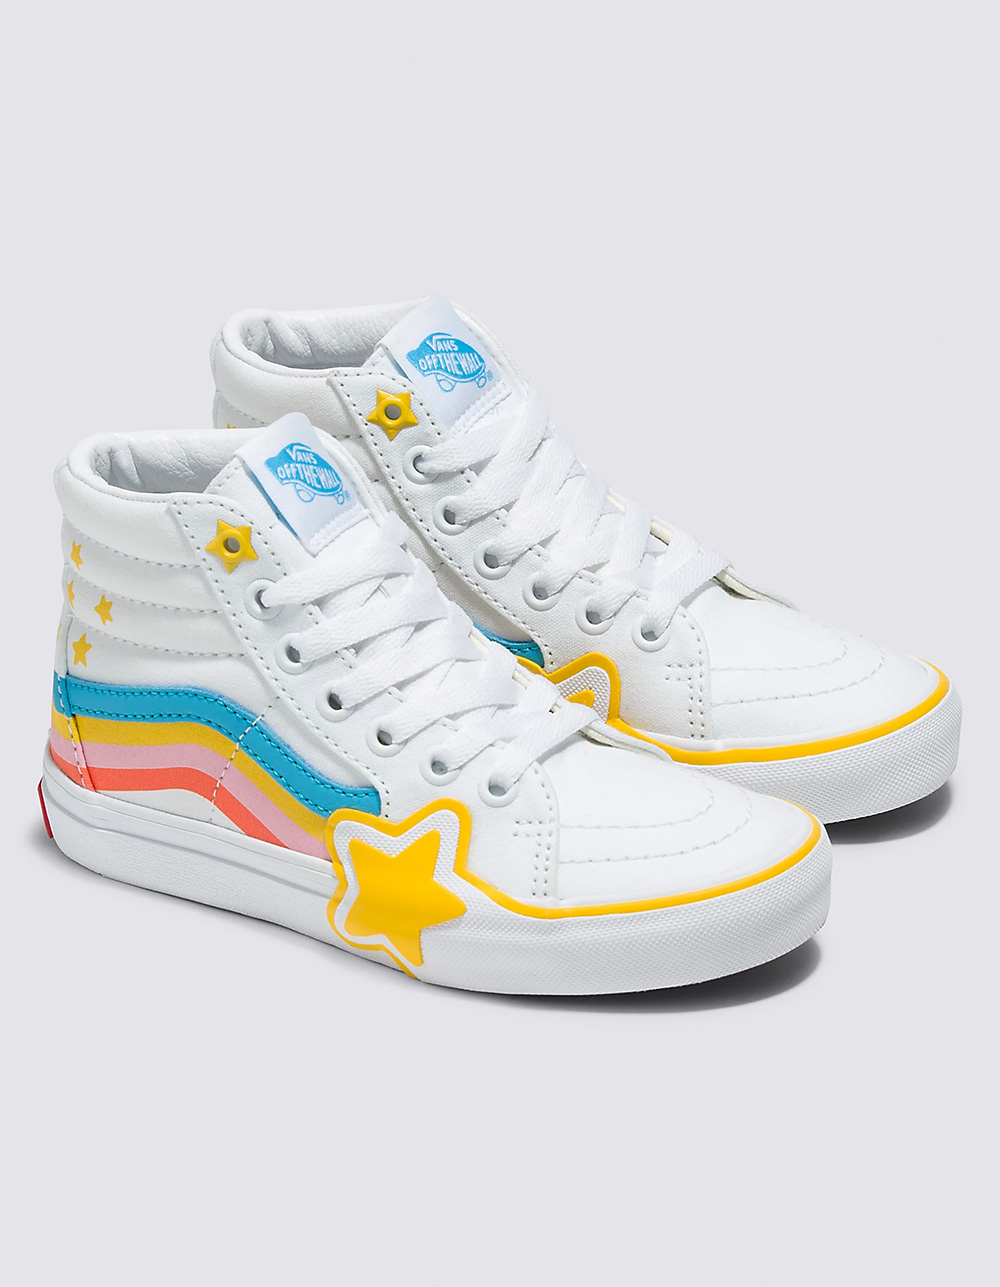 VANS Sk8-Hi Rainbow Star Girls Shoes WHITE Tillys